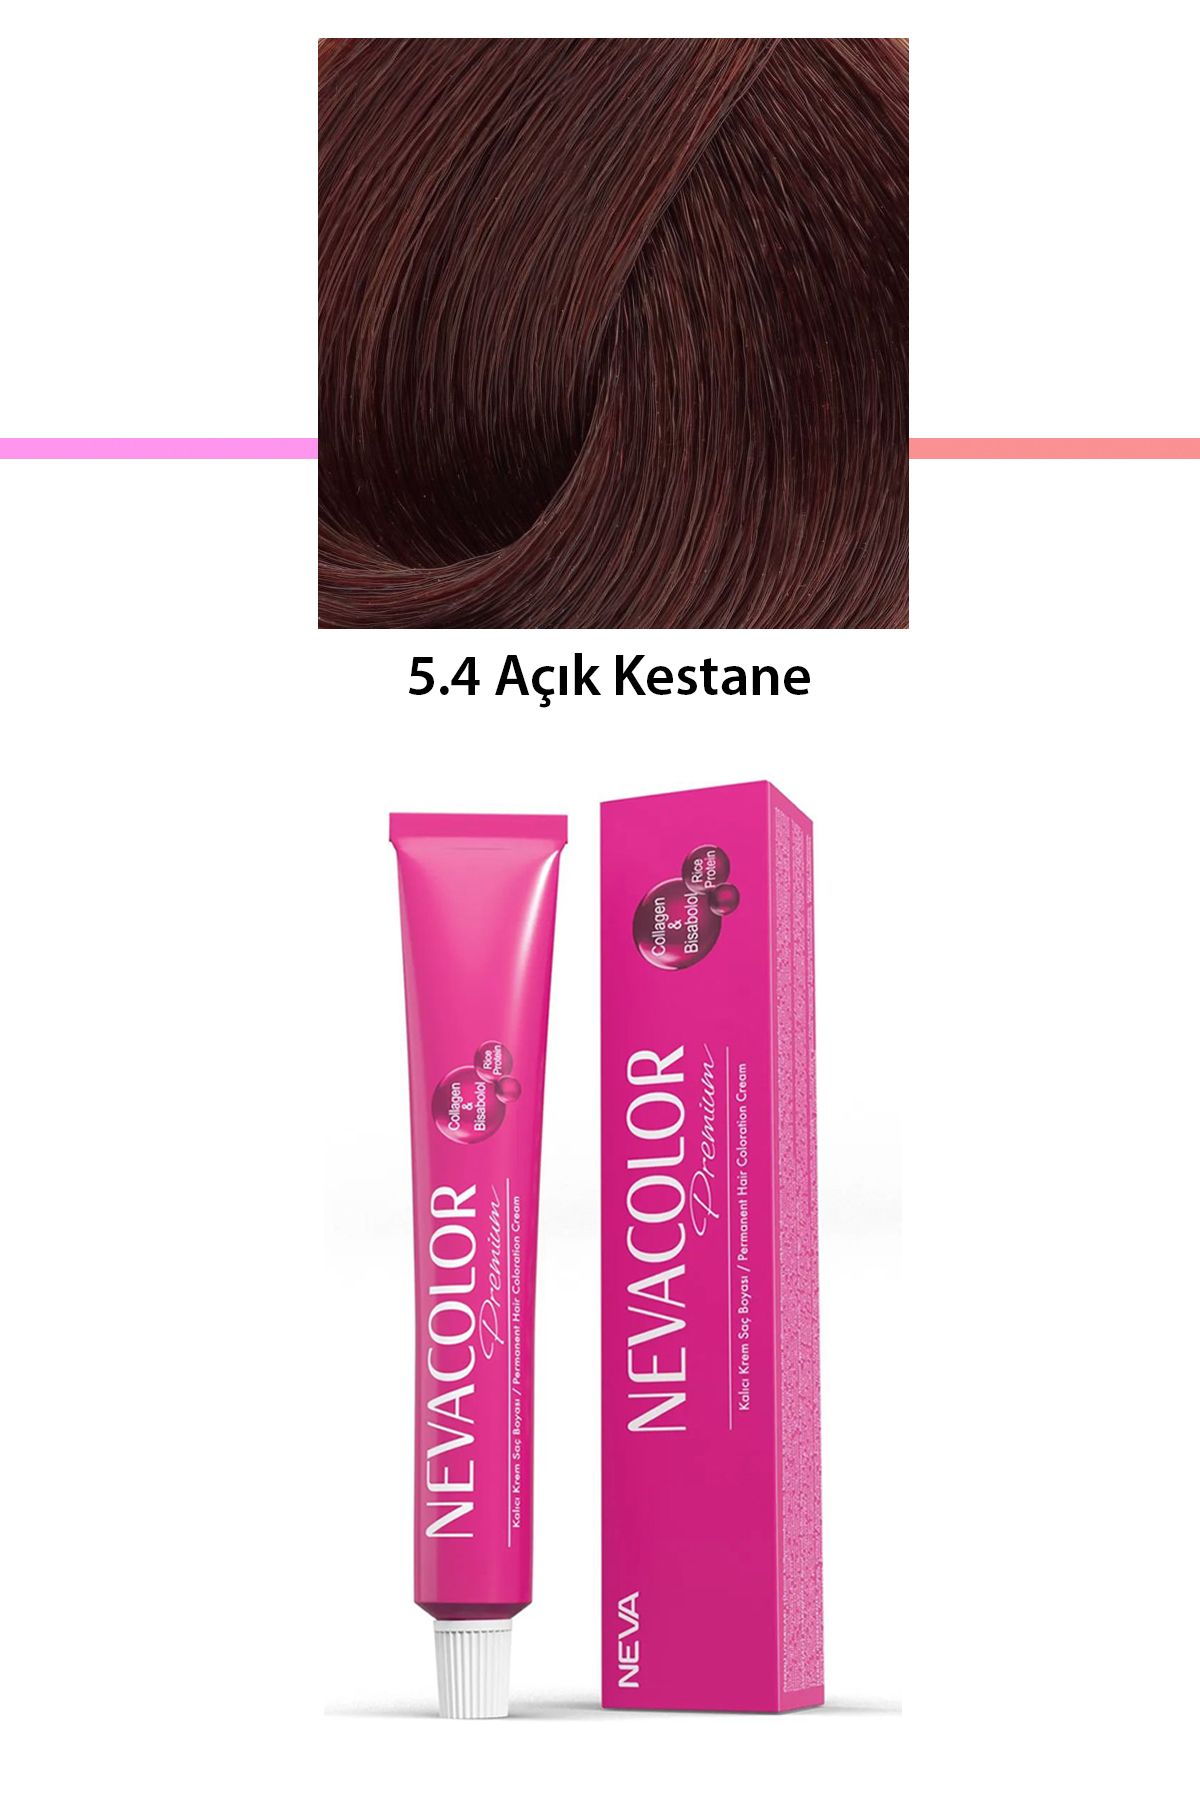 Neva Color Premium 5.4 Açık Kestane - Kalıcı Krem Saç Boyası 50 g Tüp